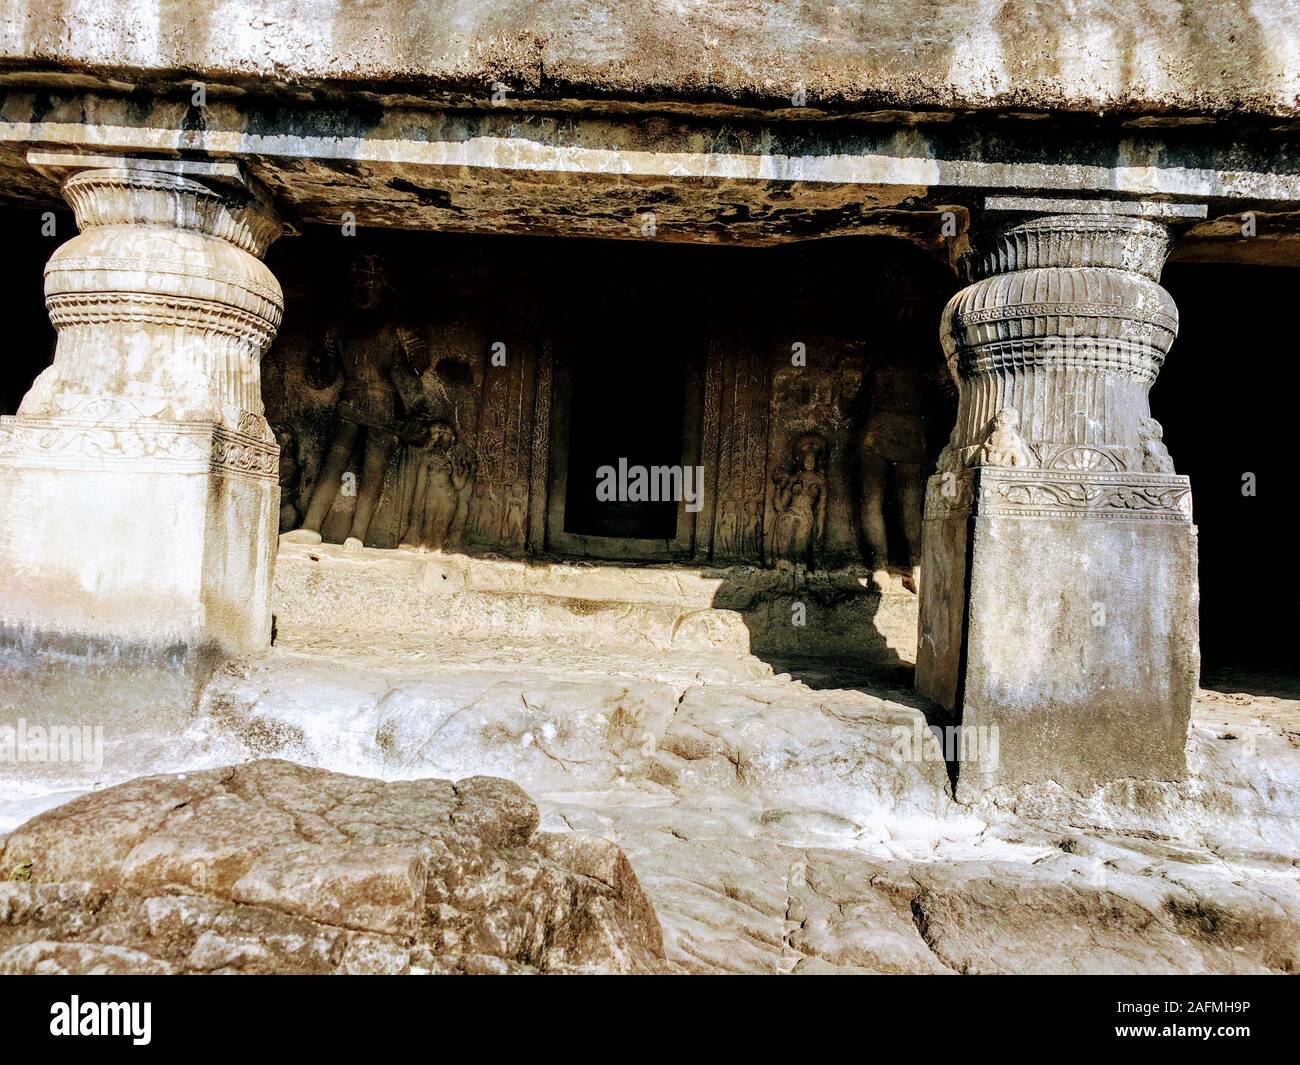 Ajanta Höhlen sind 30 Rock-cut buddhistische Höhle Denkmäler aus dem 2. Jahrhundert v. Chr. bis etwa 480 CE im Aurangabad in Maharashtra in Indien. Stockfoto